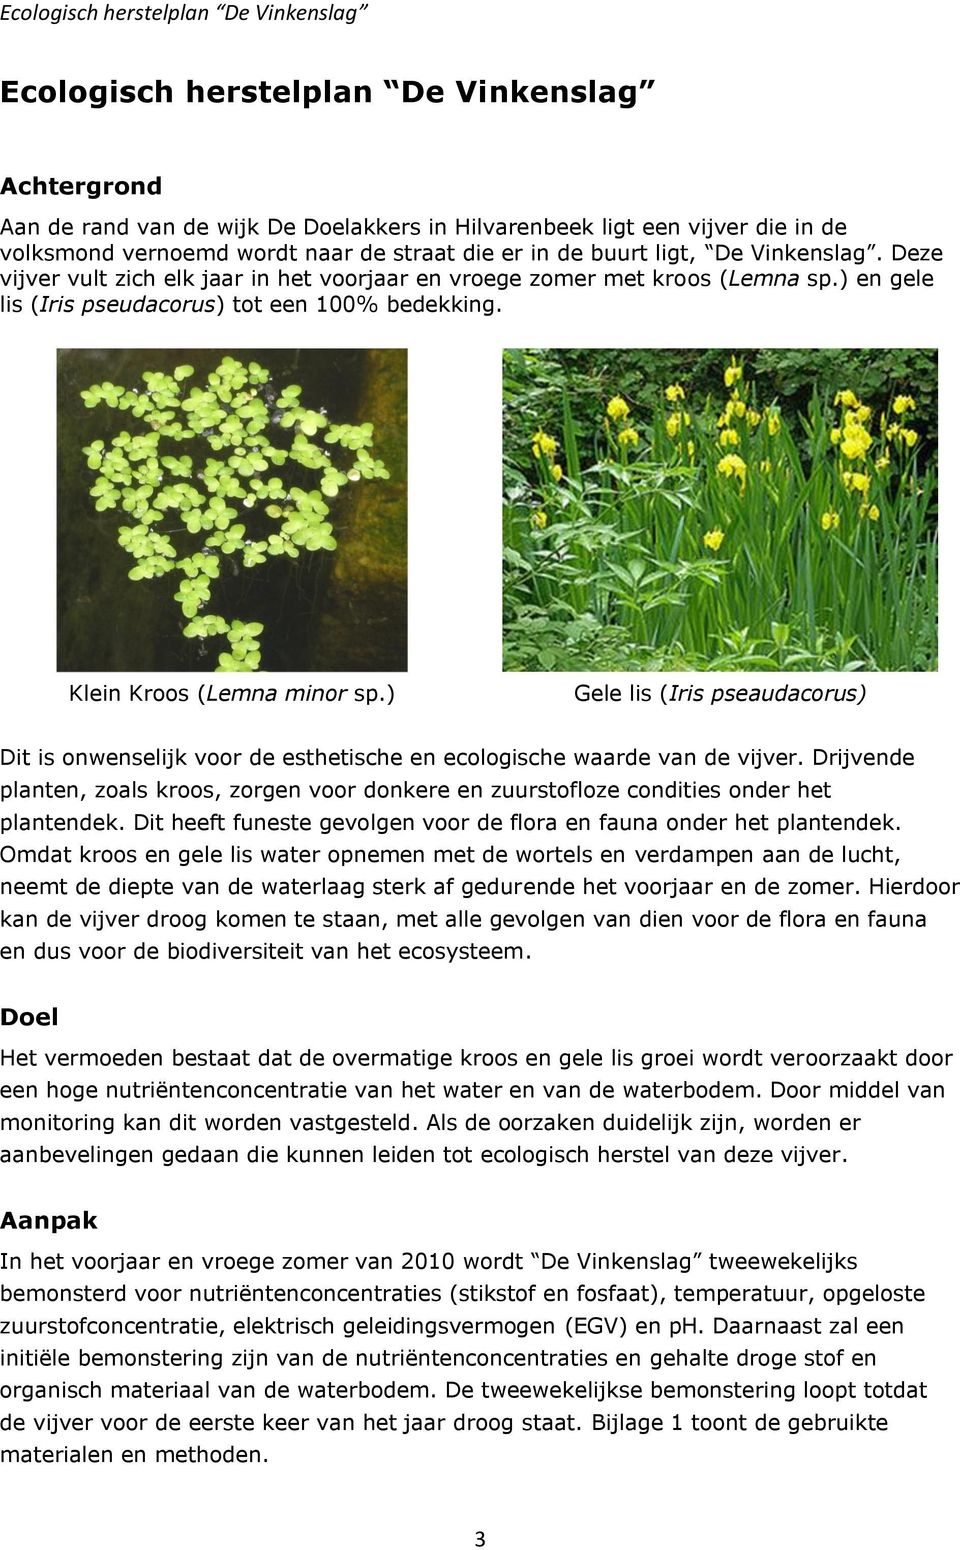 Klein Kroos (Lemna minor sp.) Gele lis (Iris pseaudacorus) Dit is onwenselijk voor de esthetische en ecologische waarde van de vijver.